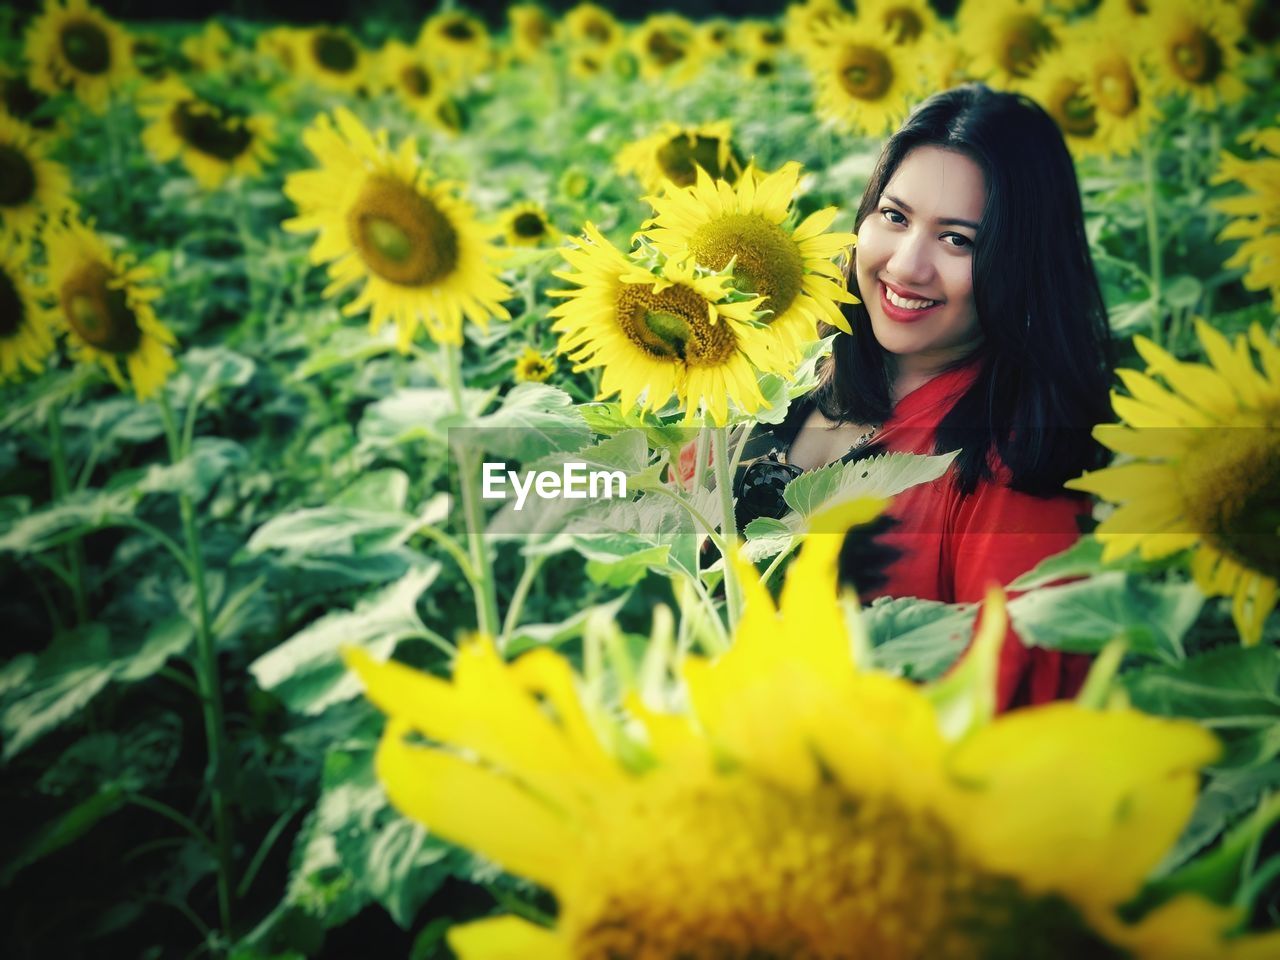 Portrait of smiling woman in sunflower field